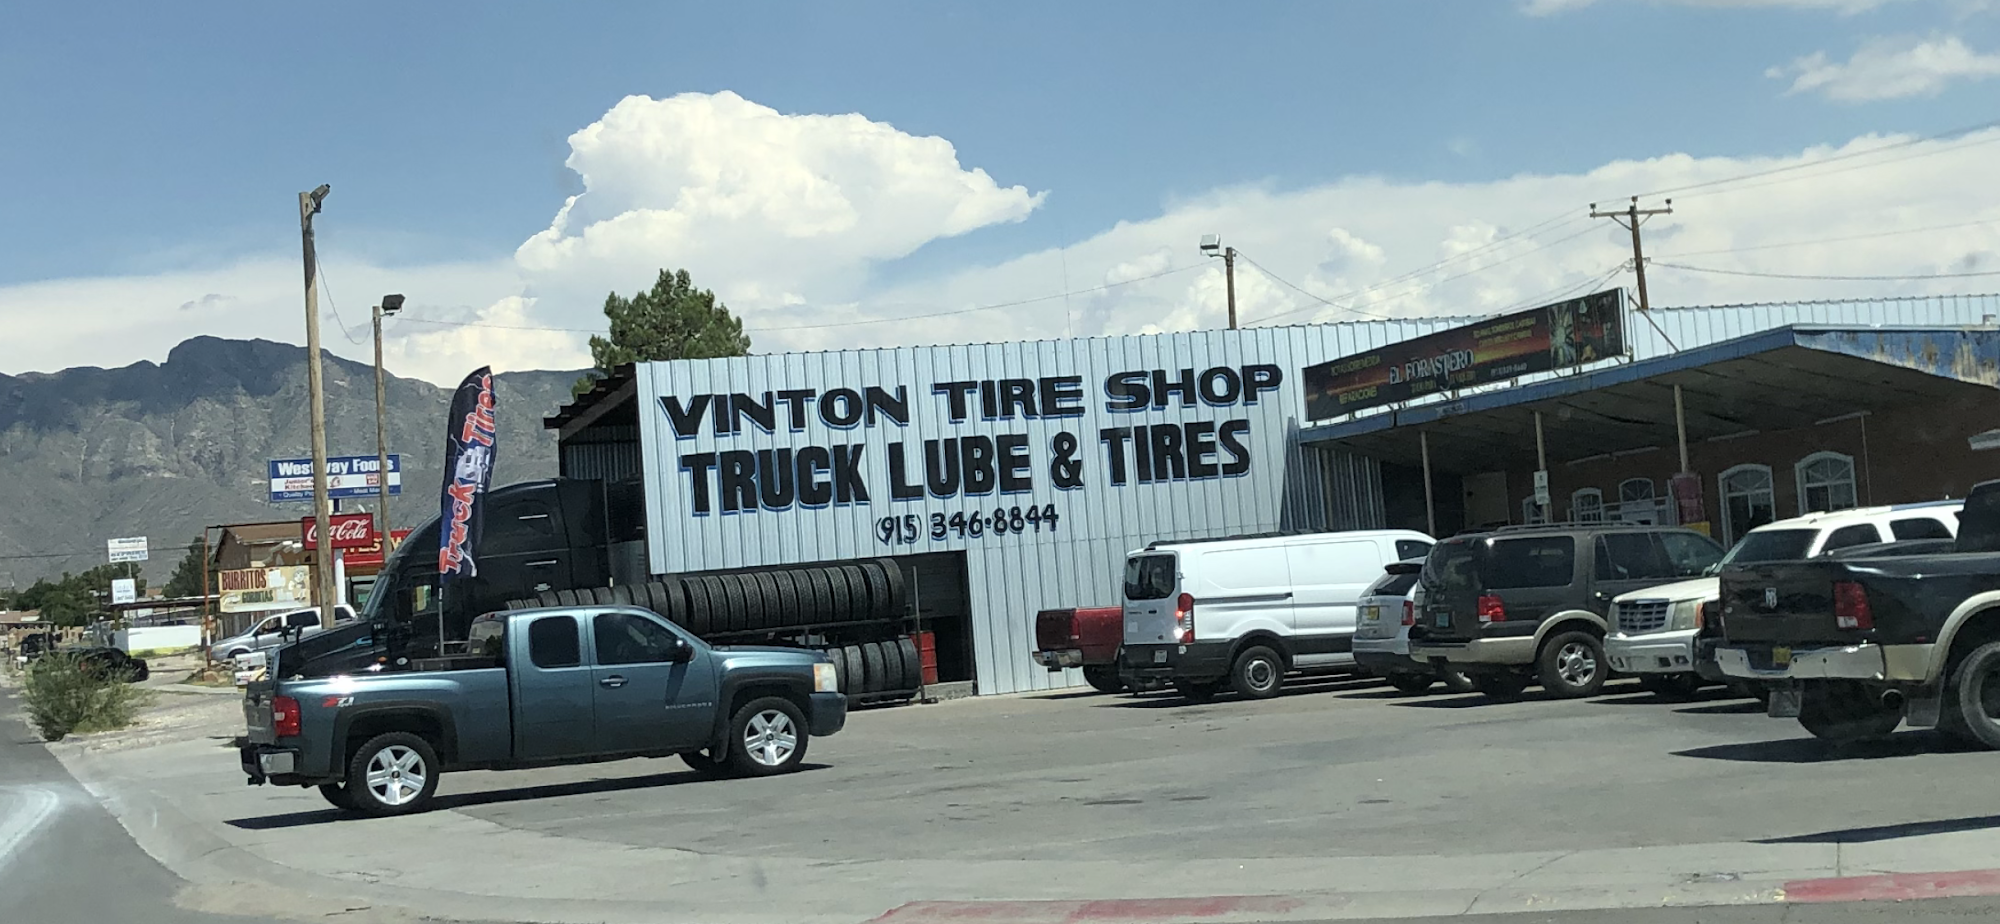 Vinton Tire Shop